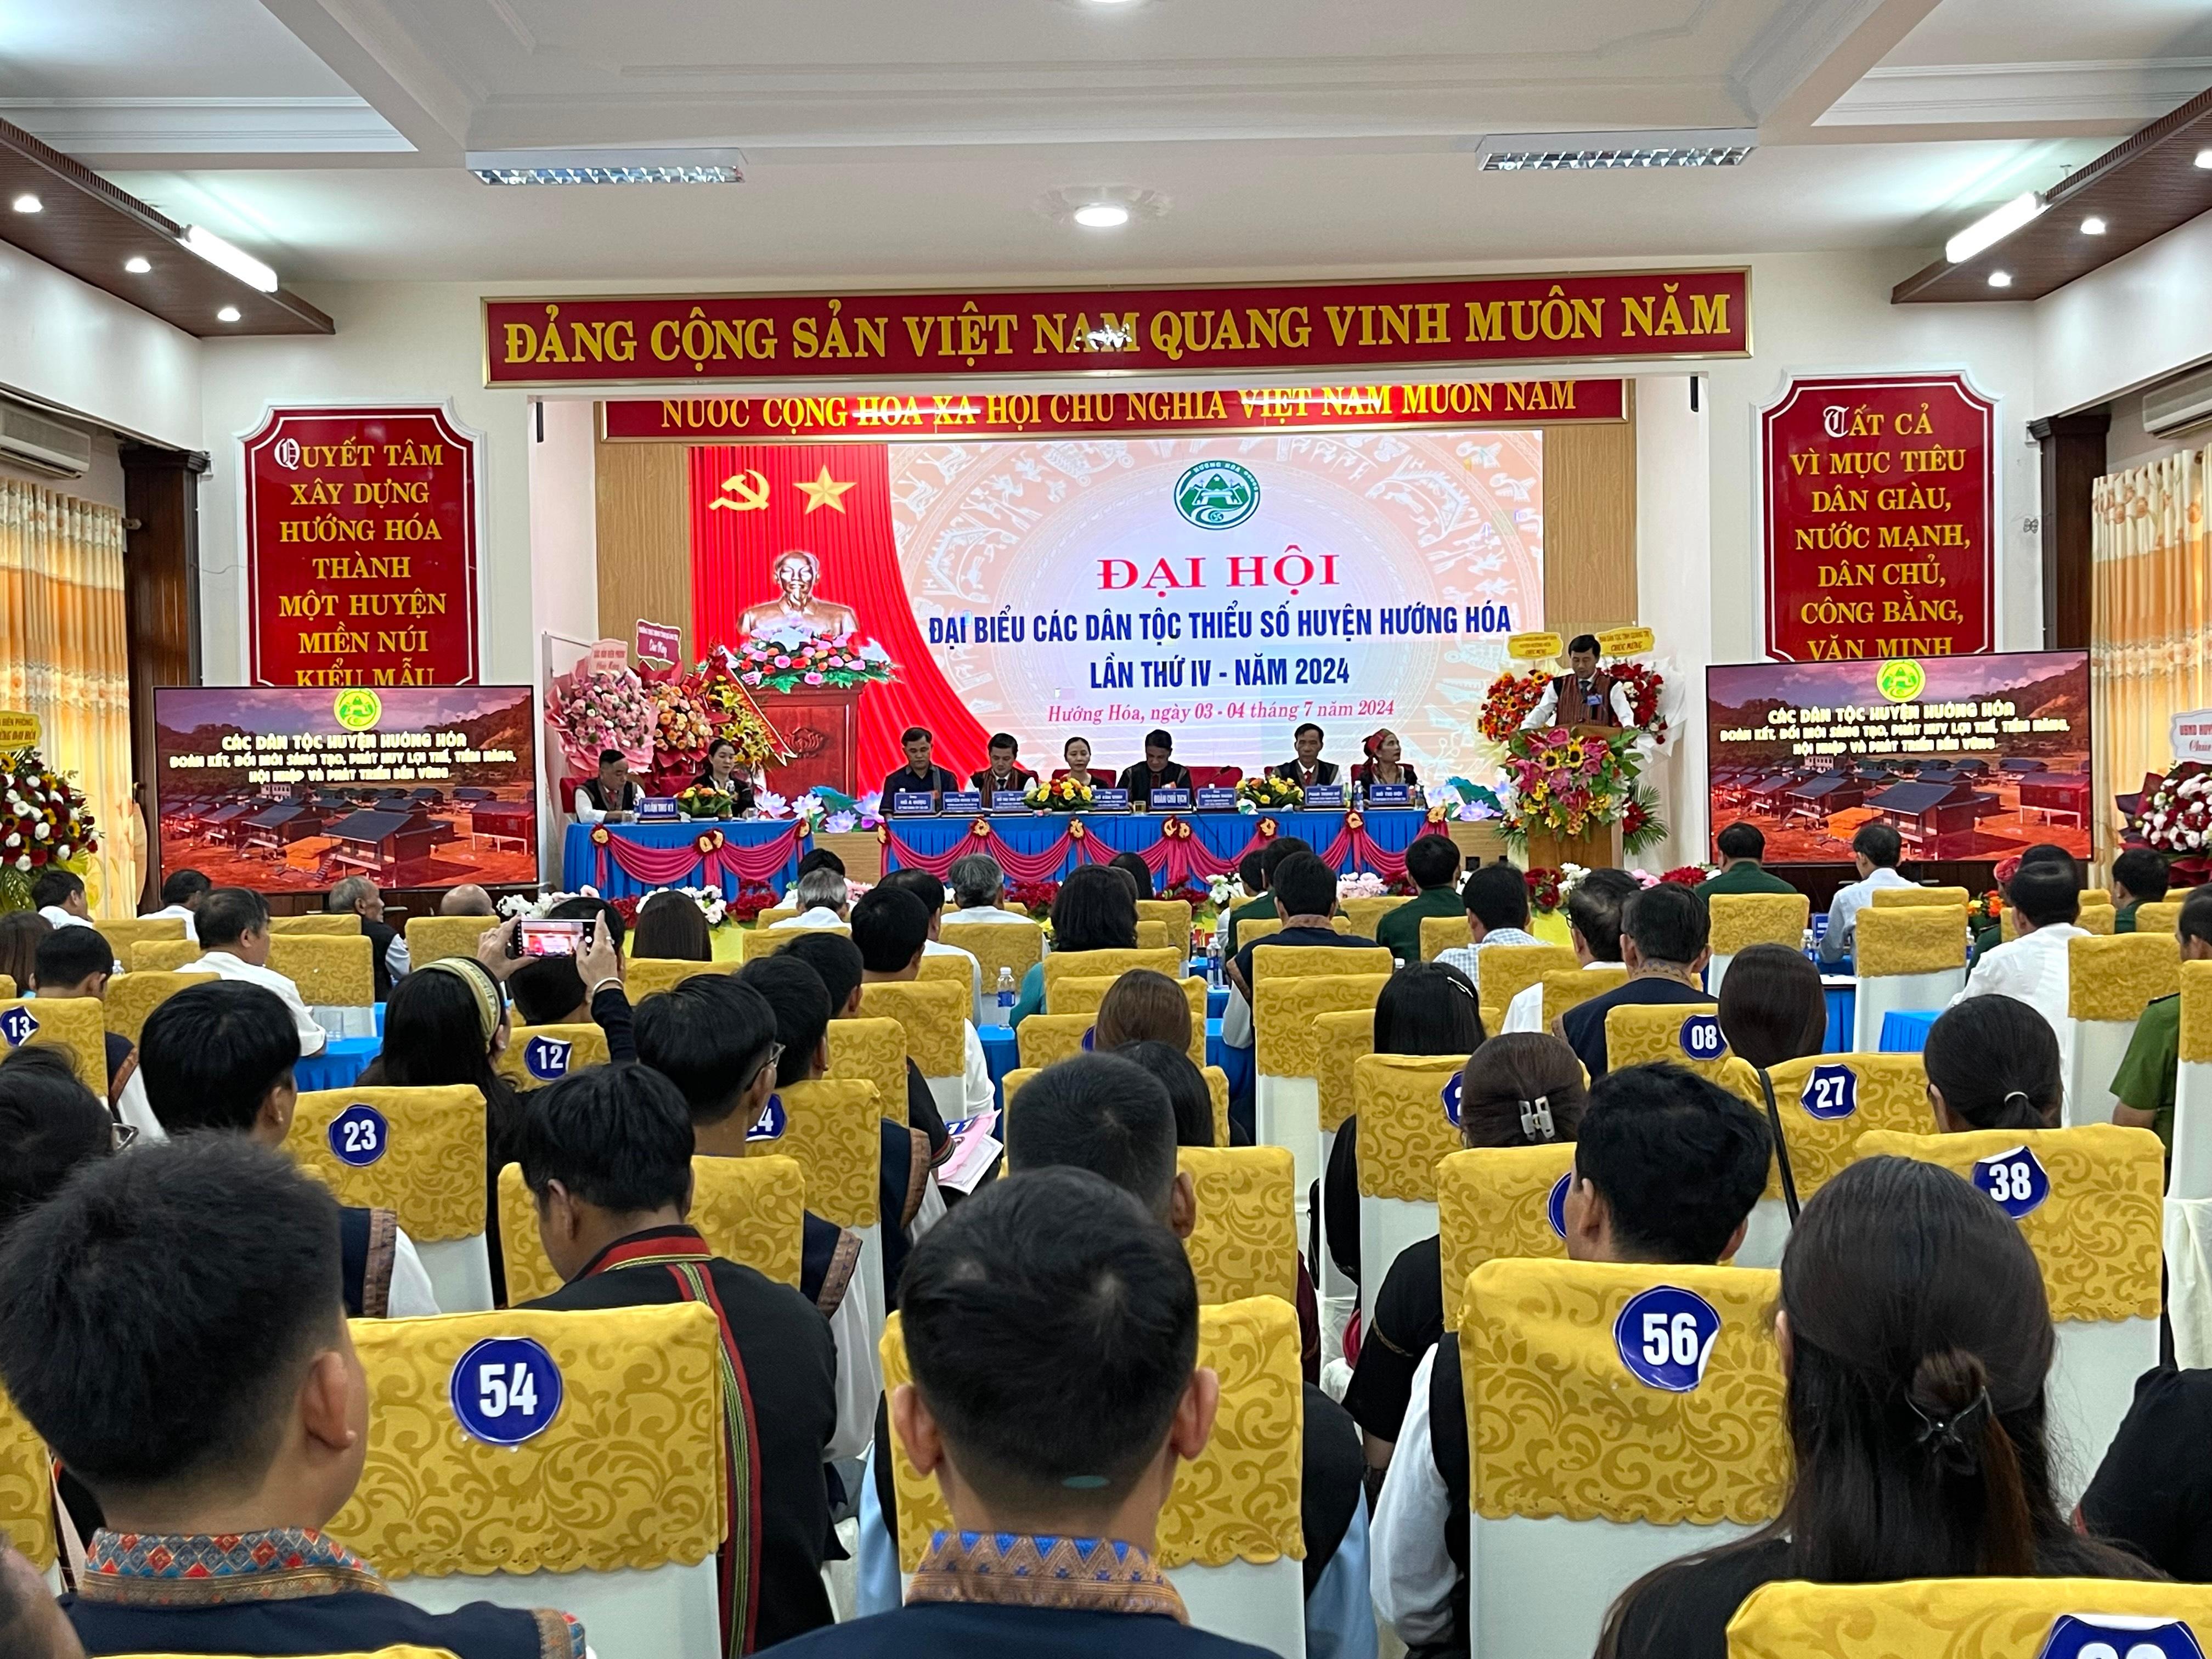 Đại hội Đại biểu các dân tộc tiểu số huyện Hướng Hóa lần thứ IV, năm 2024